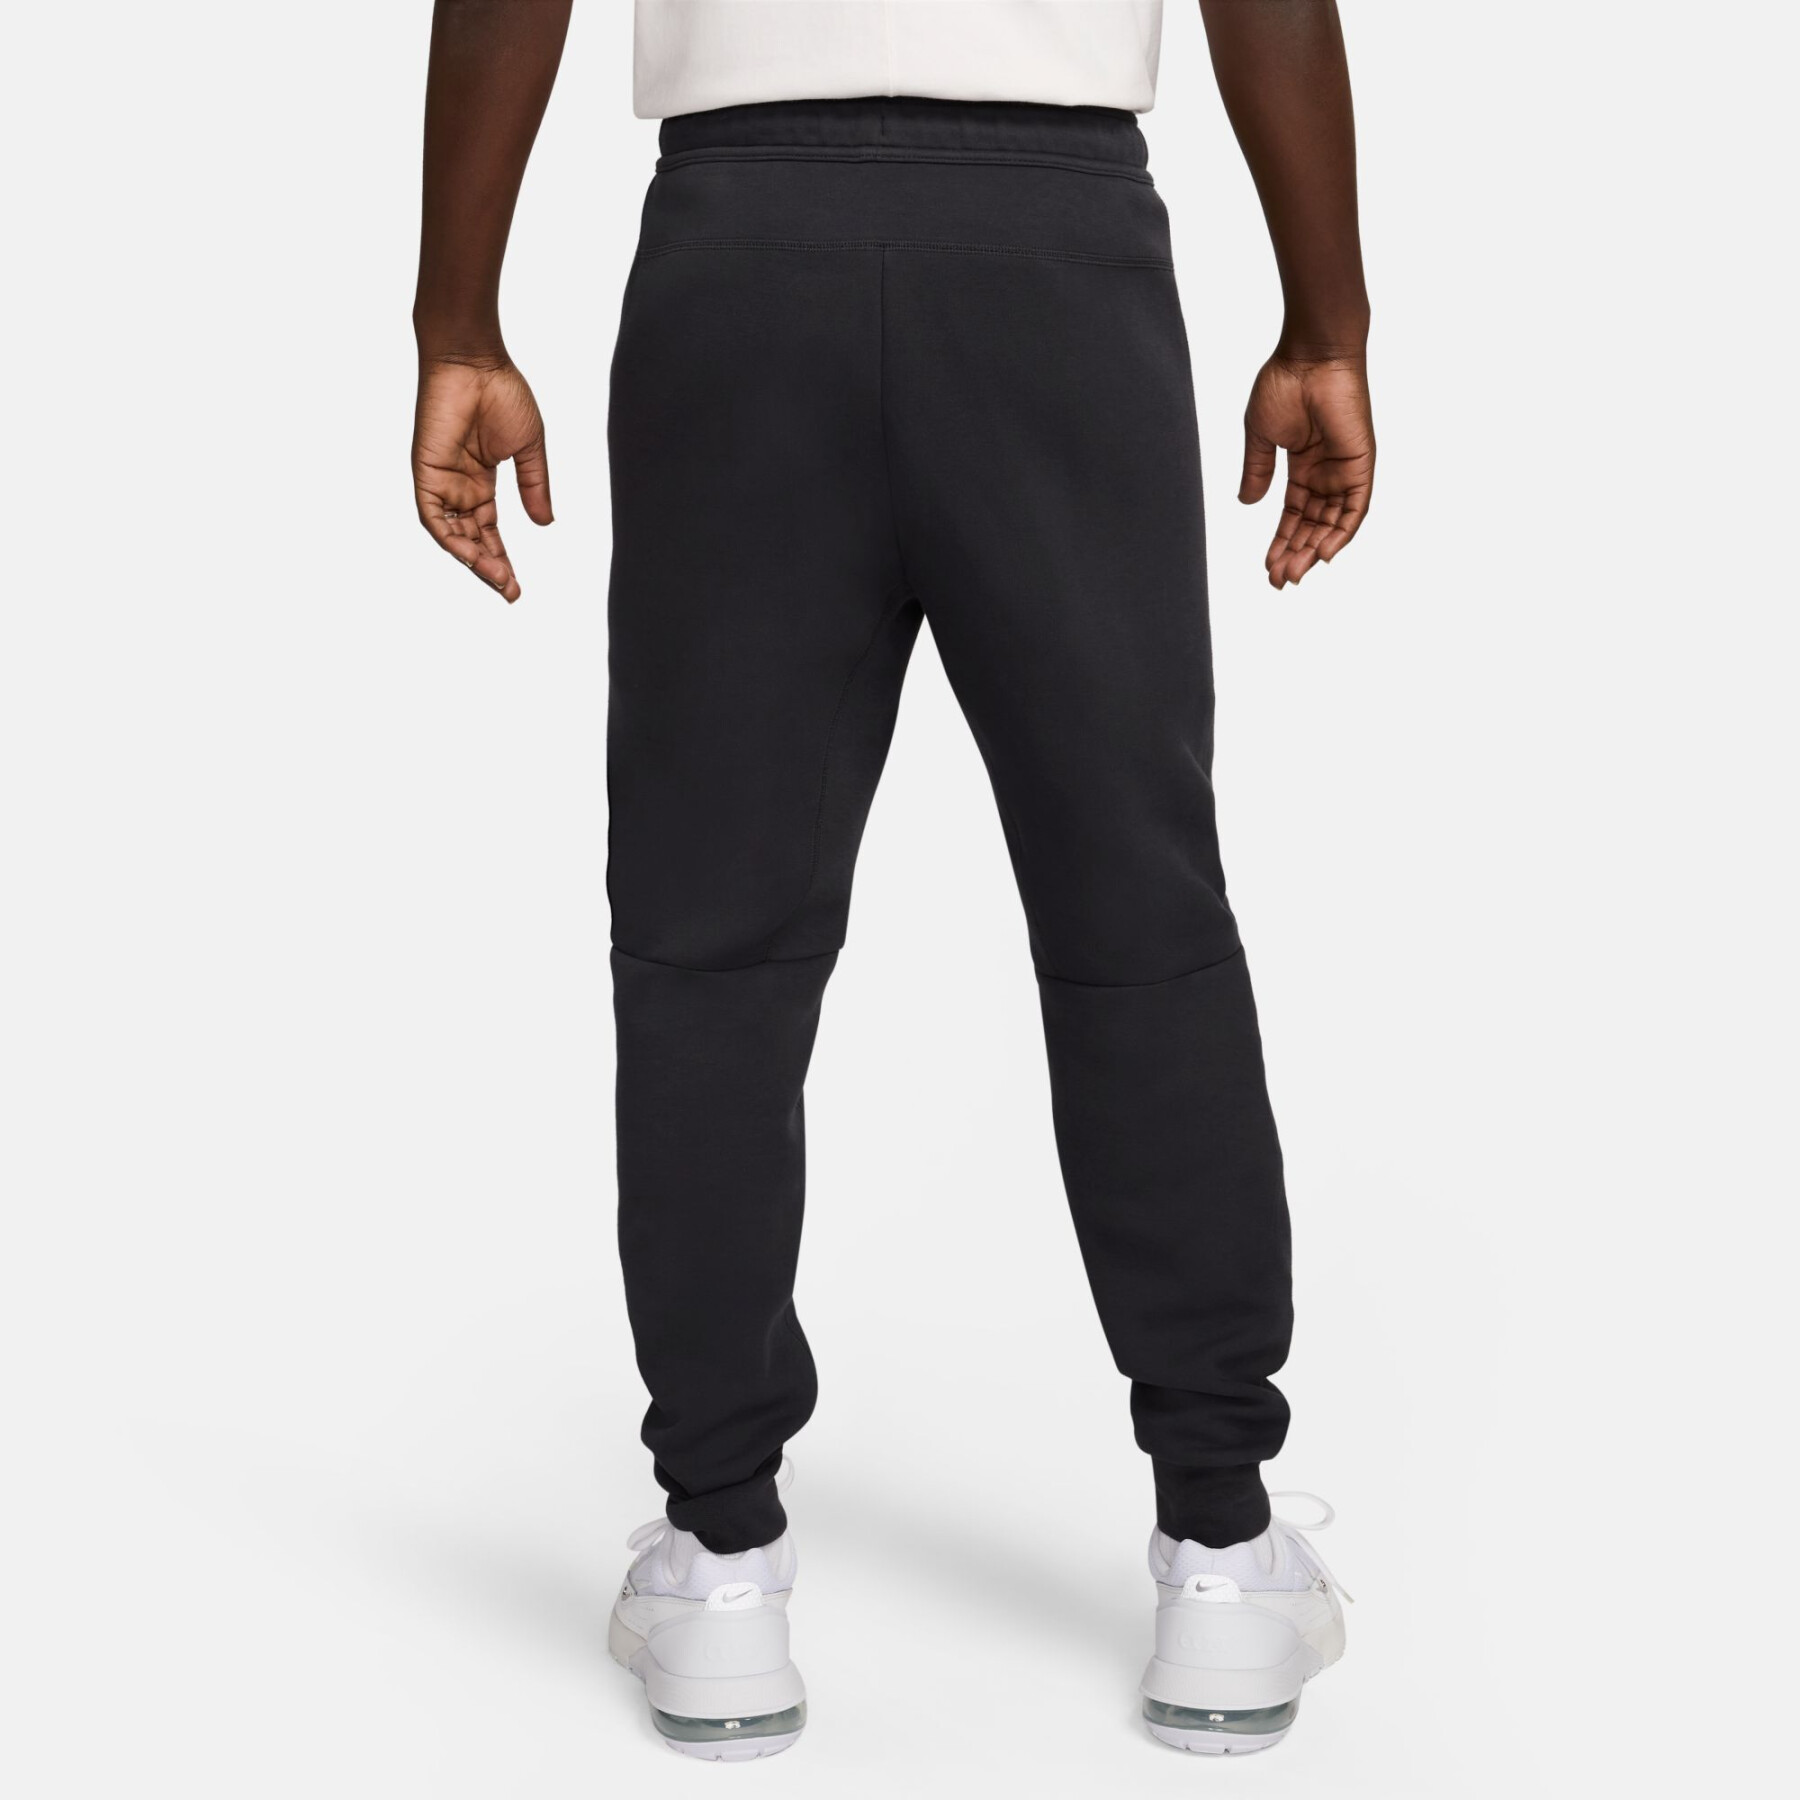 Fleece jogging suit Nike Sportswear Tech